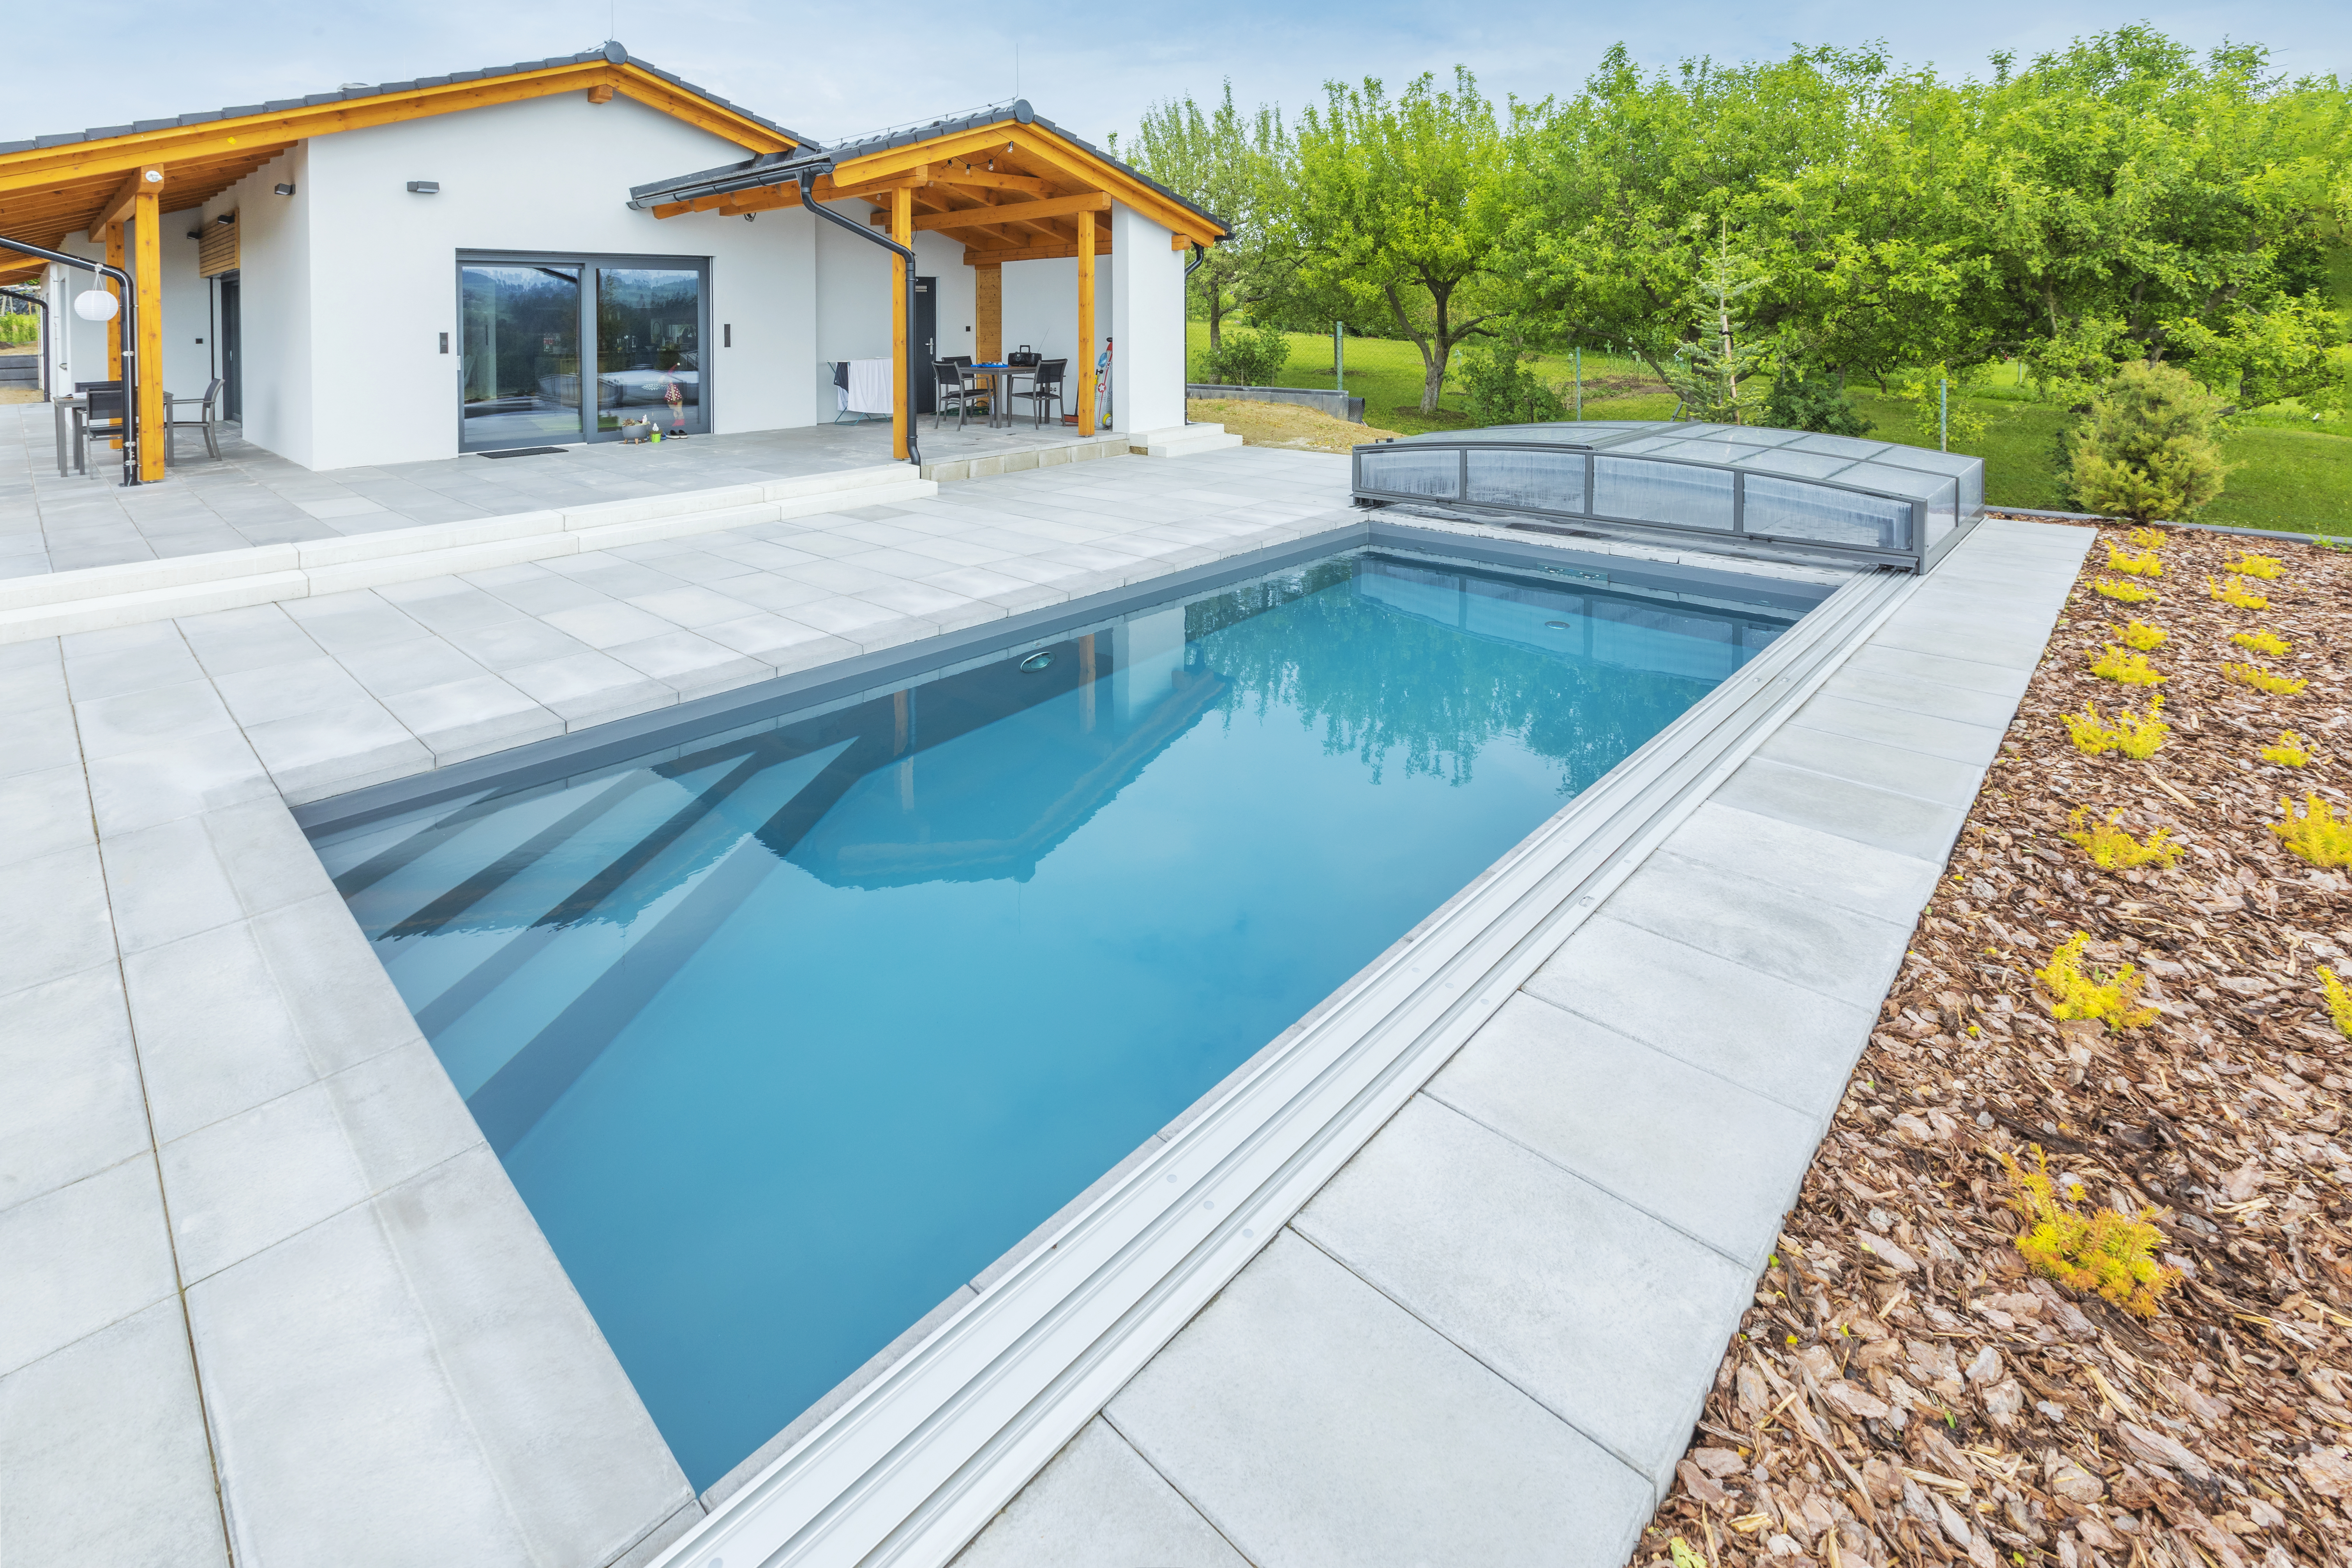 Concrete pool by Aquamarine spa